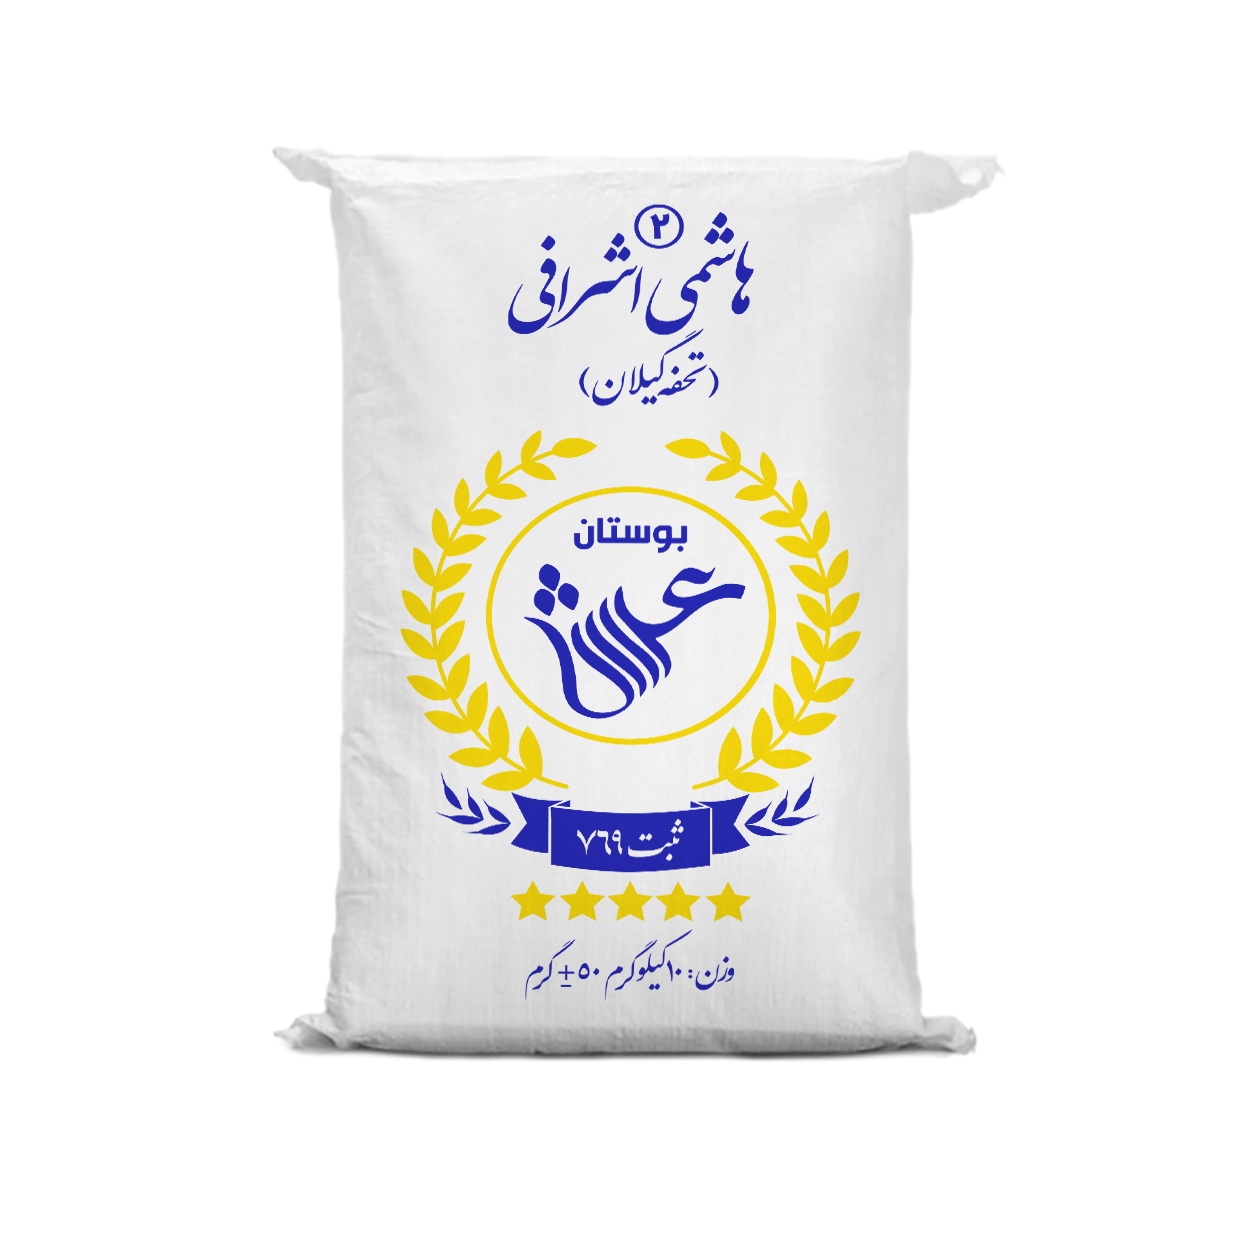 نکته خرید - قیمت روز برنج ایرانی هاشمی اشرافی 2 گیلان بوستان عرش - 10 کیلوگرم خرید